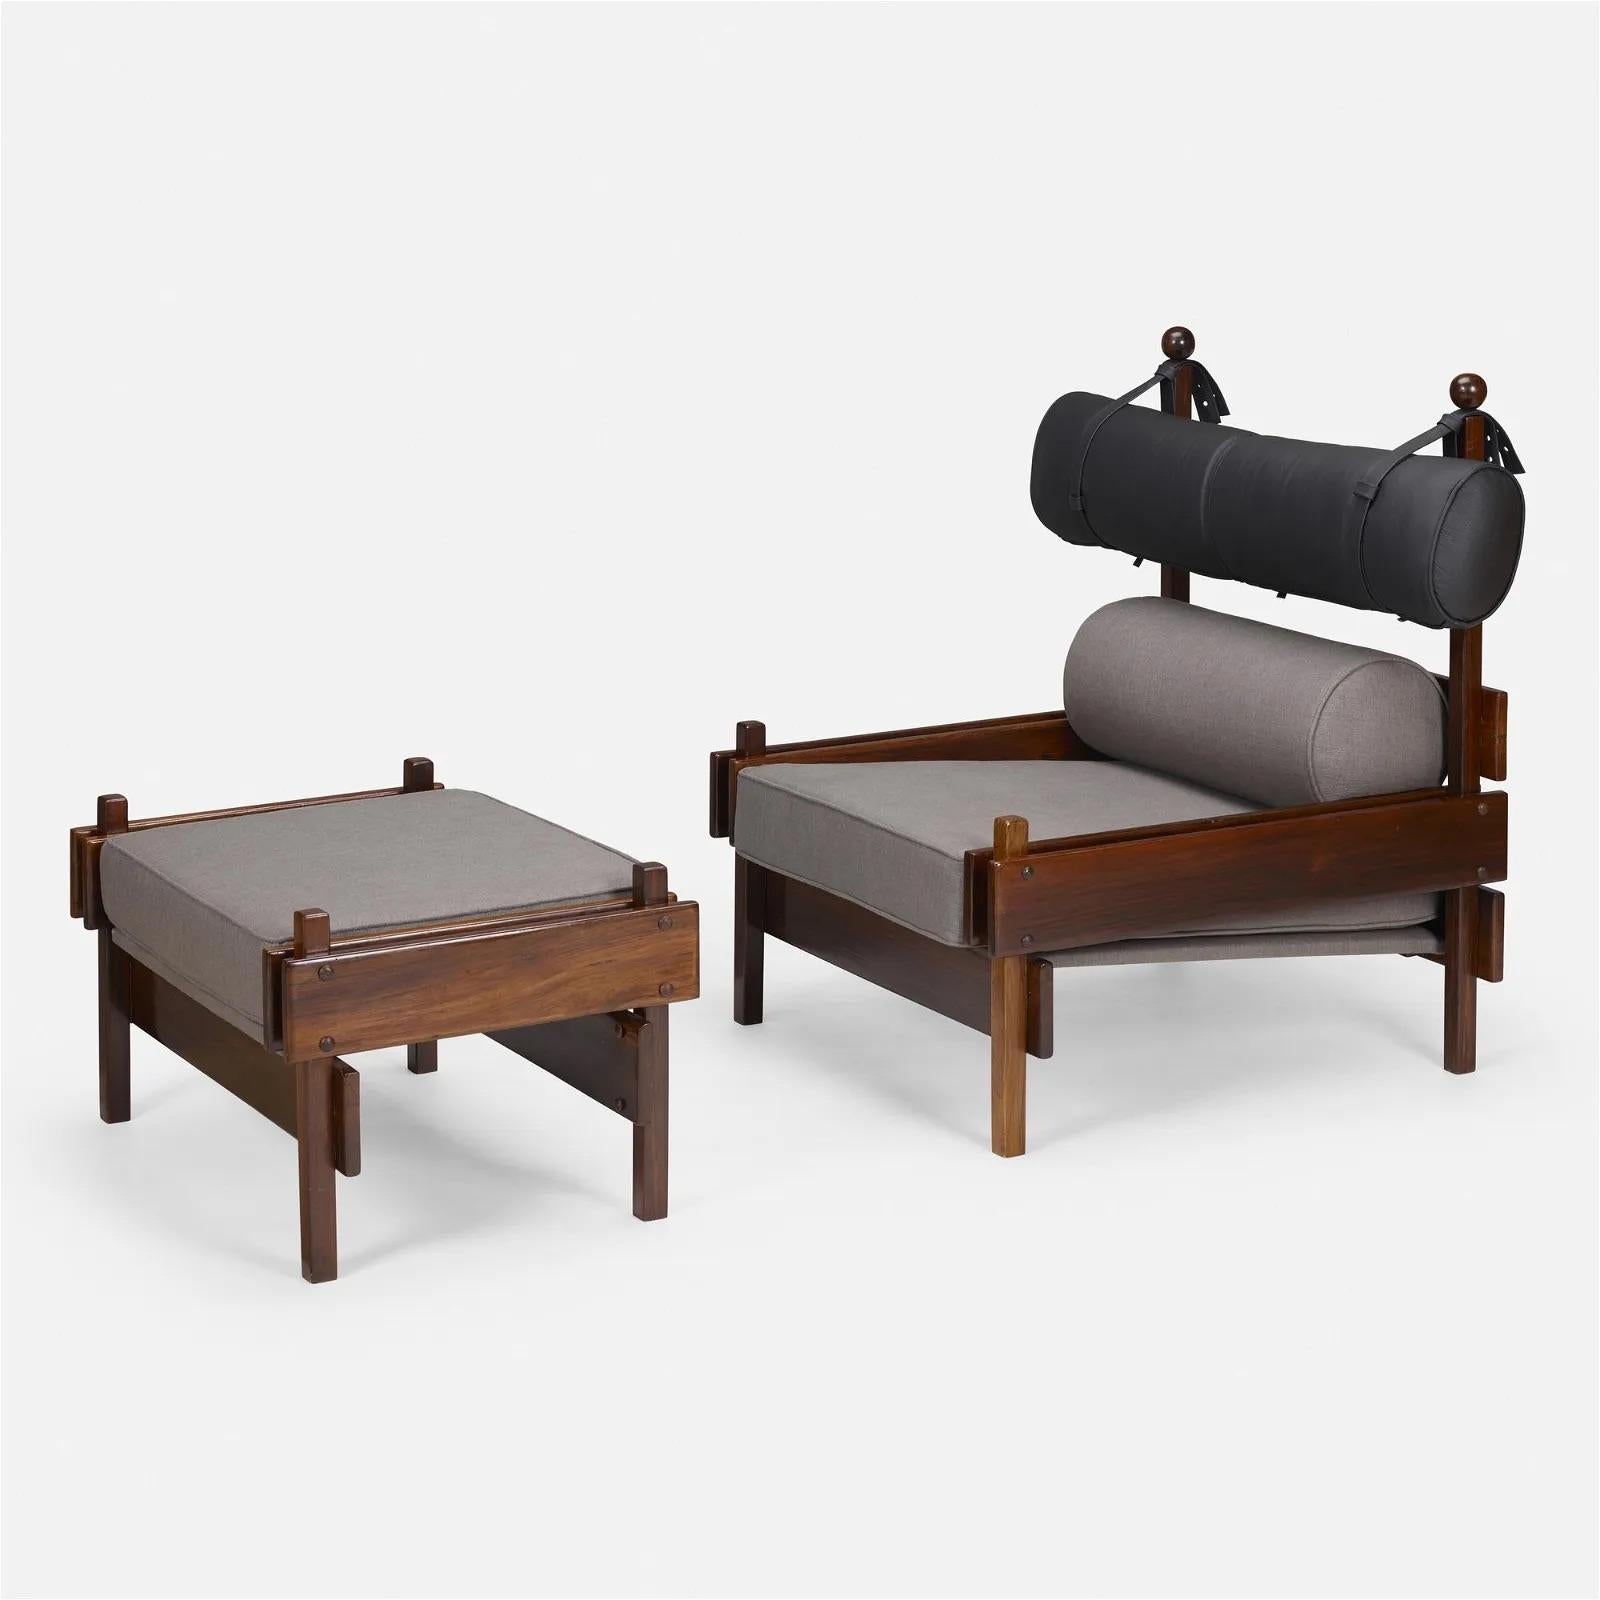 Atemberaubendes Paar Tonico-Loungesessel, entworfen von Sergio Rodrigues, mit passenden Hockern. Diese von Oca für Meia Pataca in Brasilien hergestellten Stühle und Hocker sind aus massivem Jacaranda-Palisanderholz gefertigt und verfügen über ein